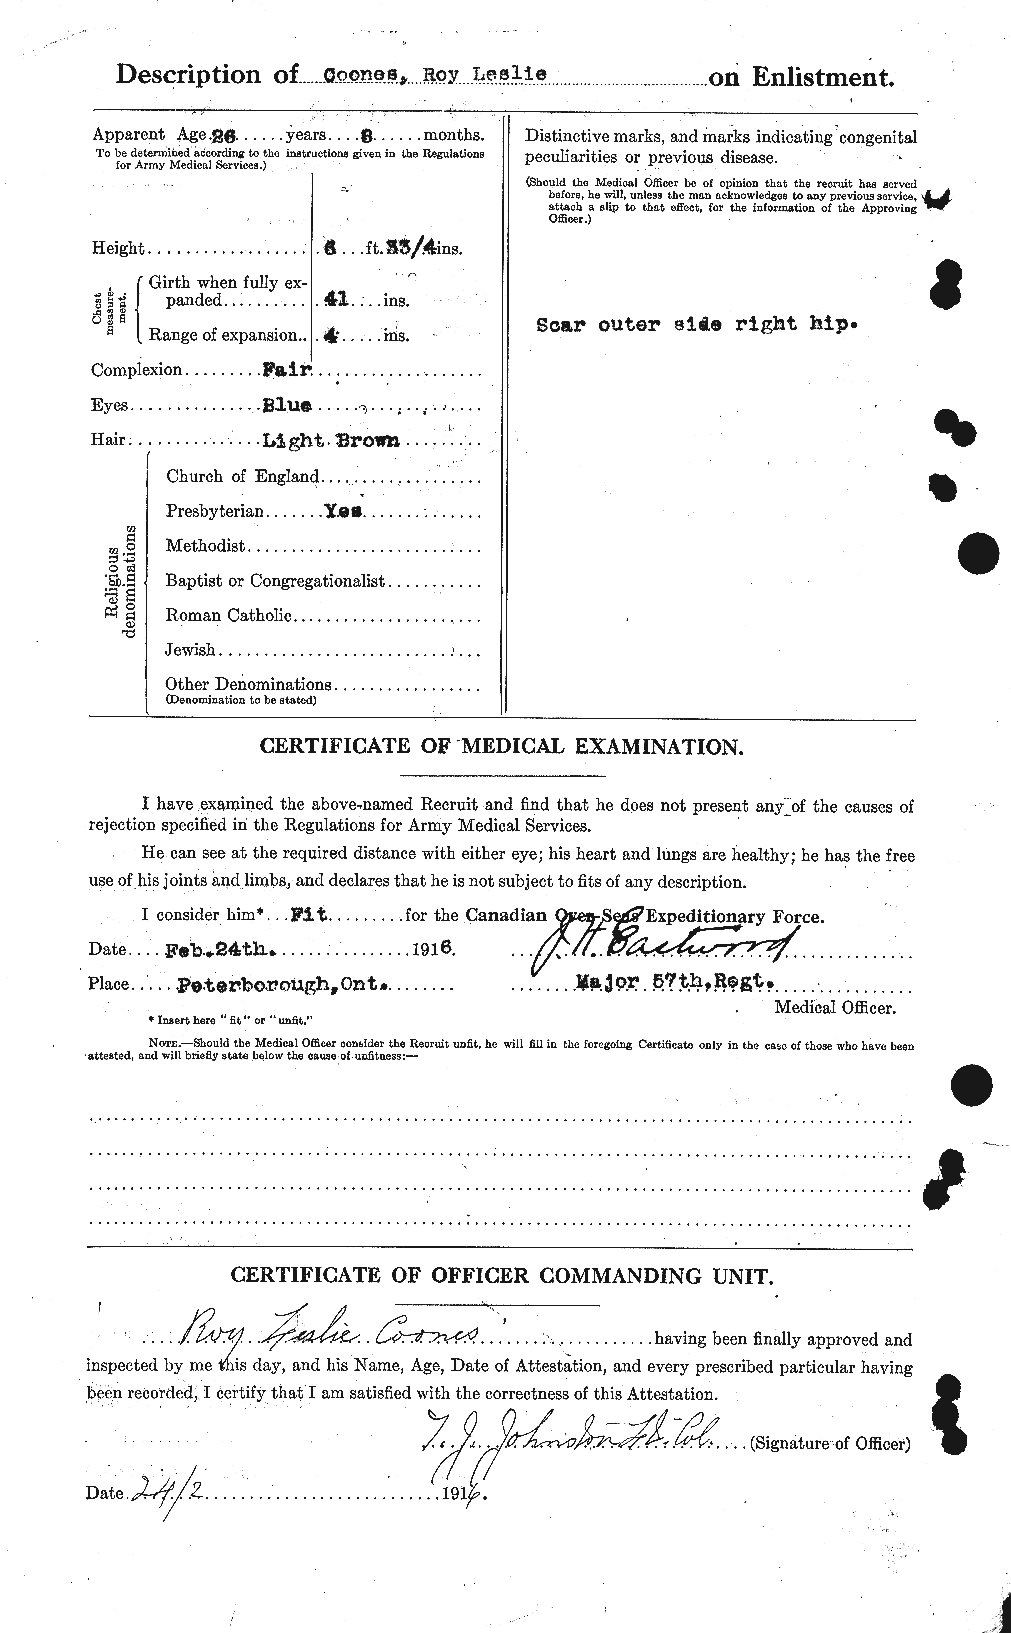 Dossiers du Personnel de la Première Guerre mondiale - CEC 055237b